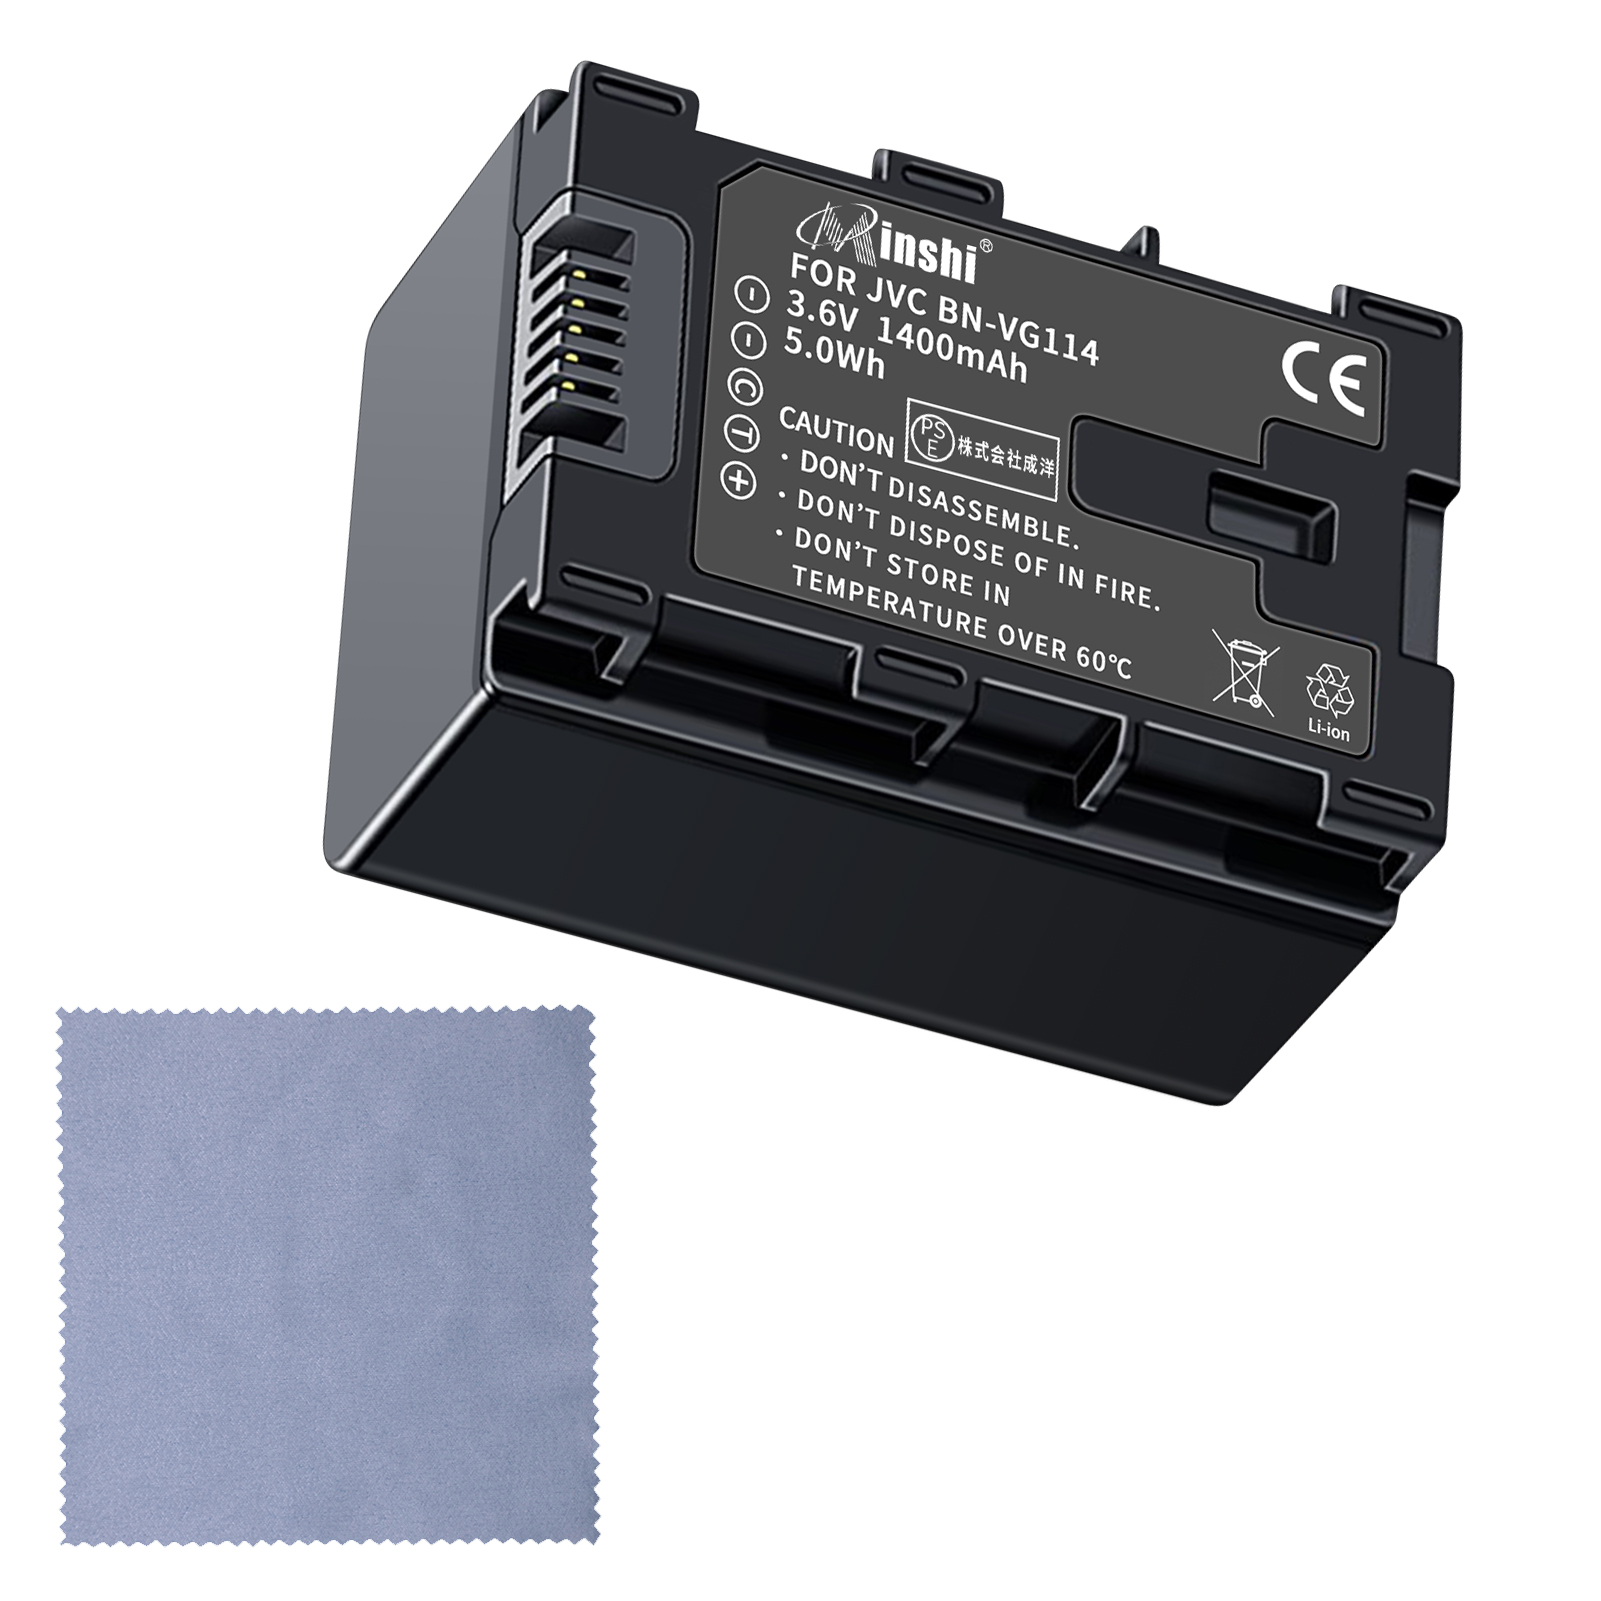 【清潔布ー付】minshi VICTOR BN-VG121 GZ-MG980 対応 互換バッテリー 1400mAh  高品質BN-VG114交換用バッテリー